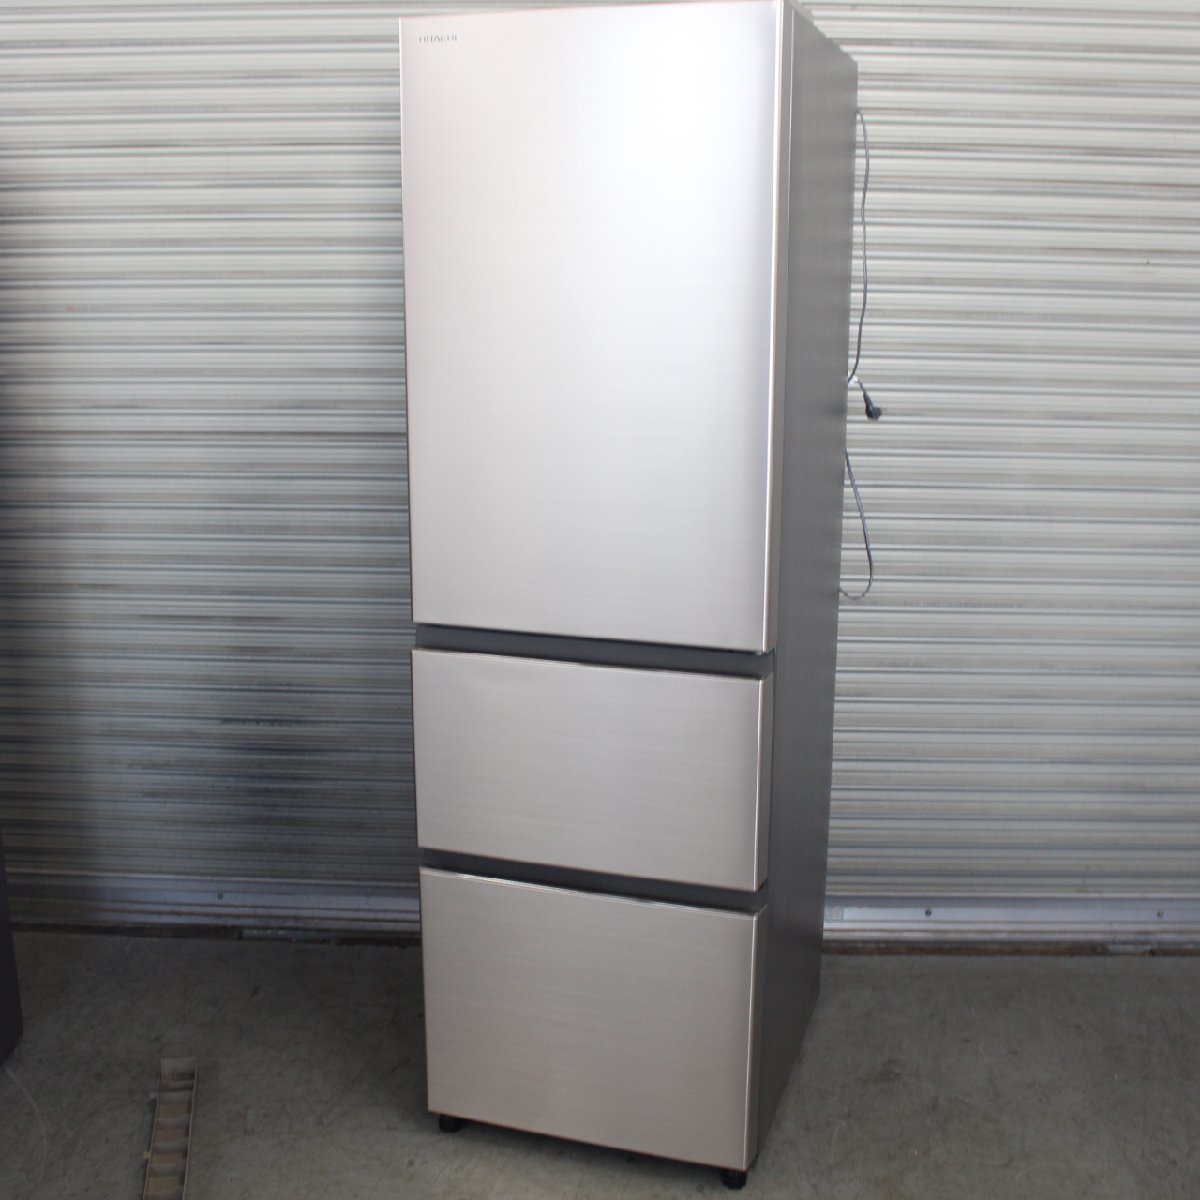 横浜市神奈川区にて 日立 ノンフロン冷凍冷蔵庫 R-V32KV(N) 2020年製 を出張買取させて頂きました。